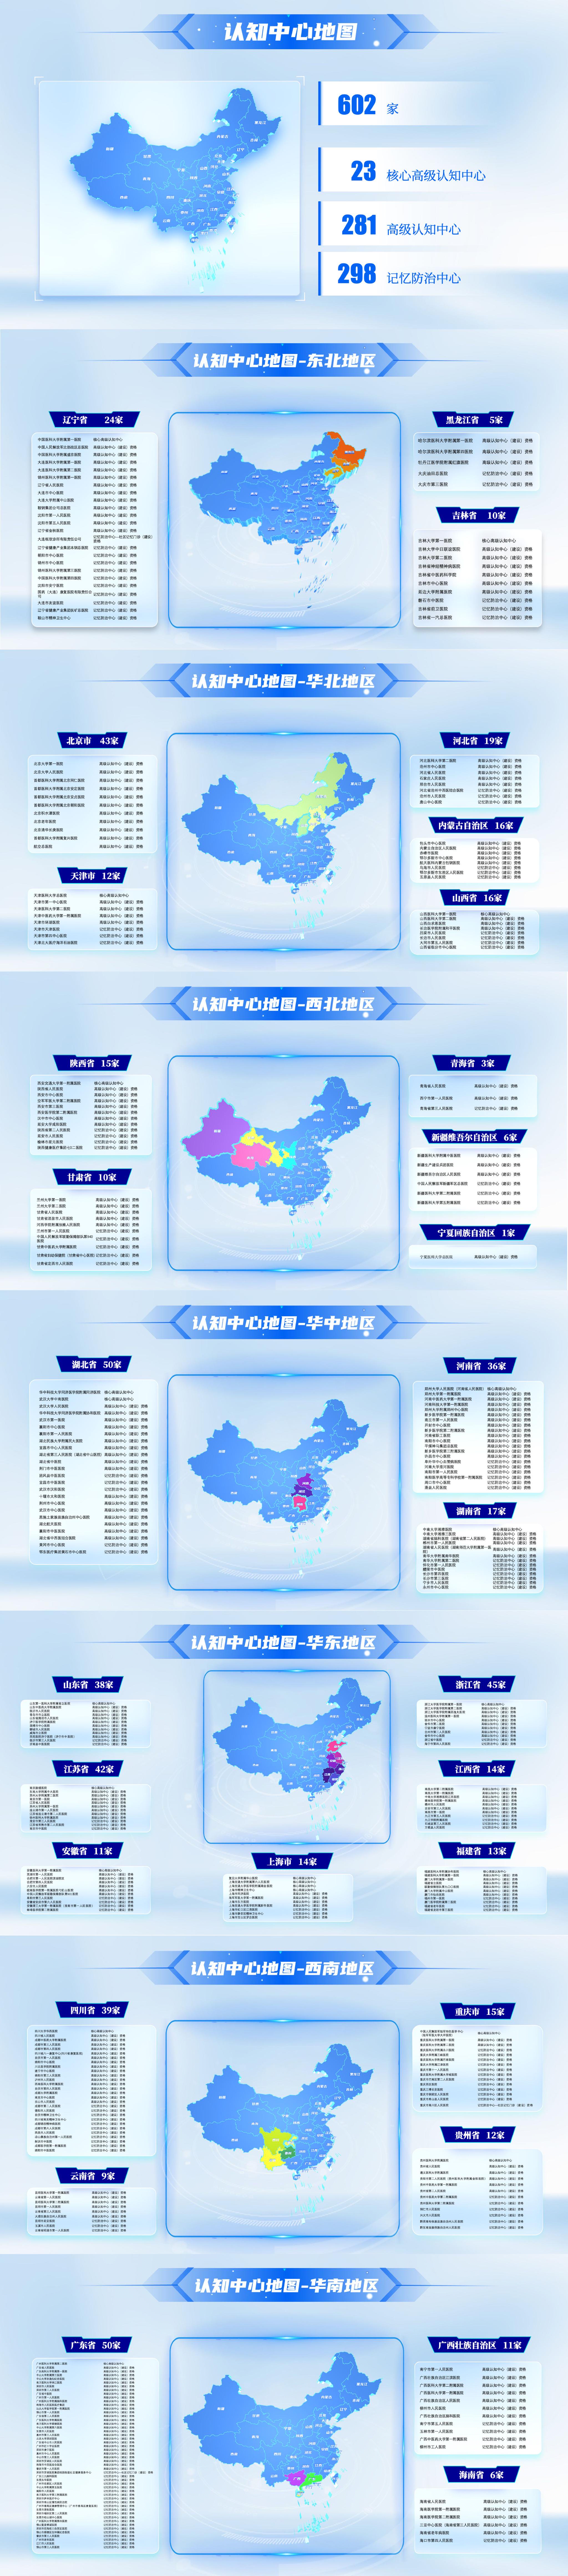 中国地图轮廓壁纸图片